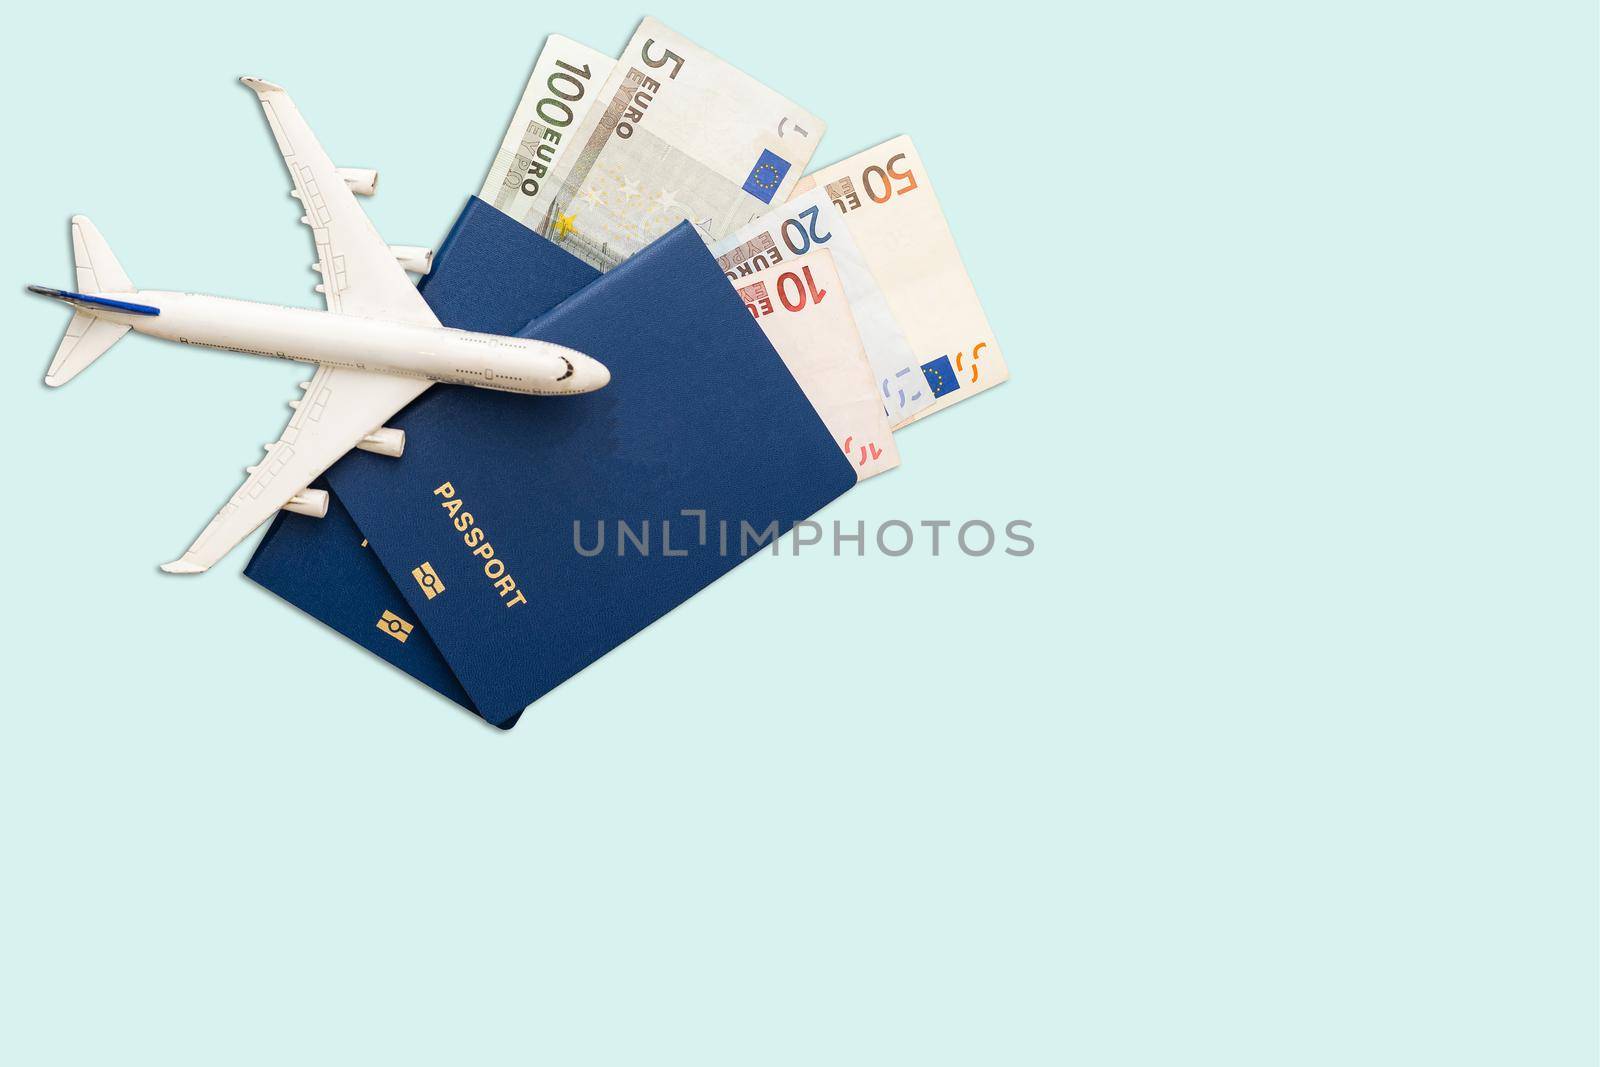 Hat, toy airplane, passport, money.